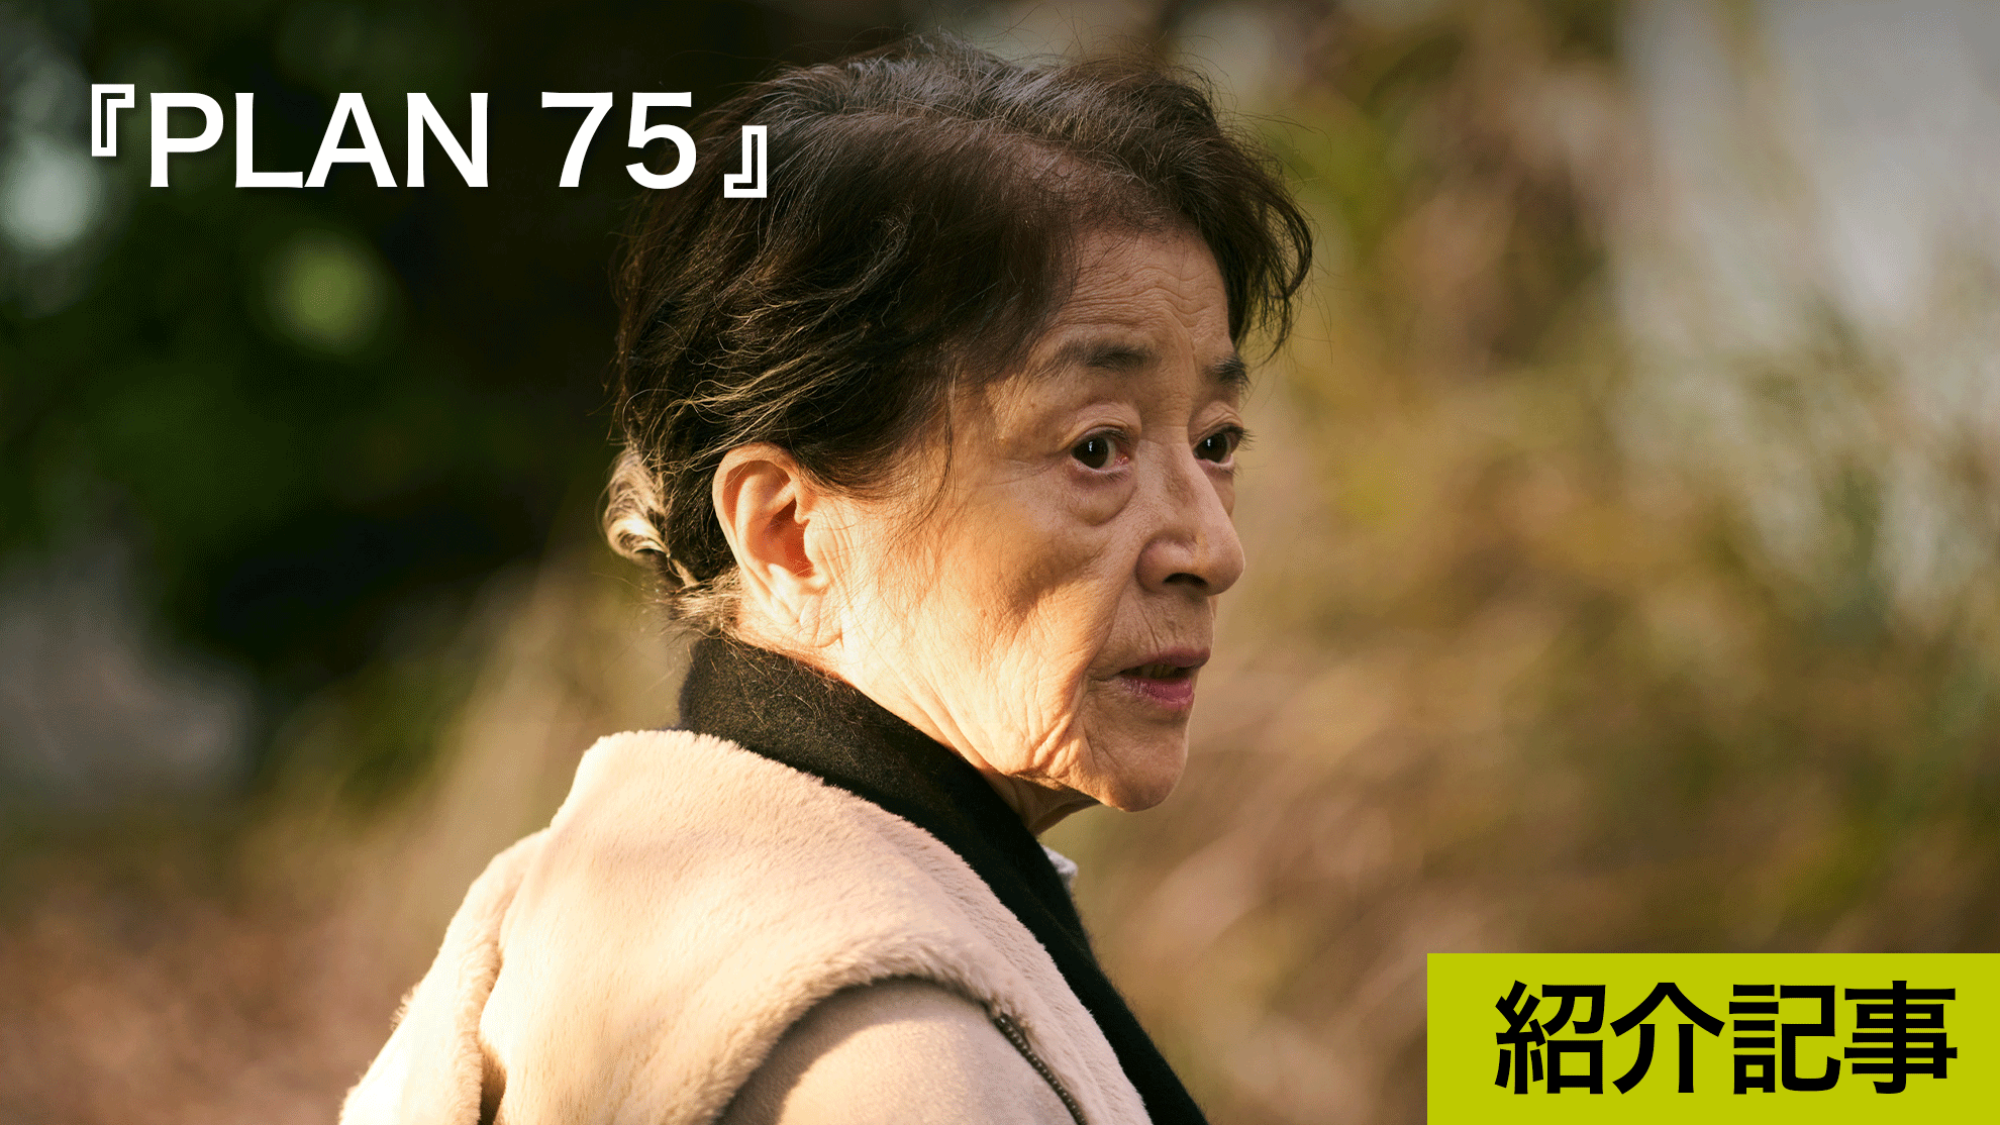 高齢化社会日本の近未来を描くカンヌ国際映画祭カメラドール特別表彰受賞『PLAN 75』日本・フランス・フィリピン・カタール国際共同制作作品